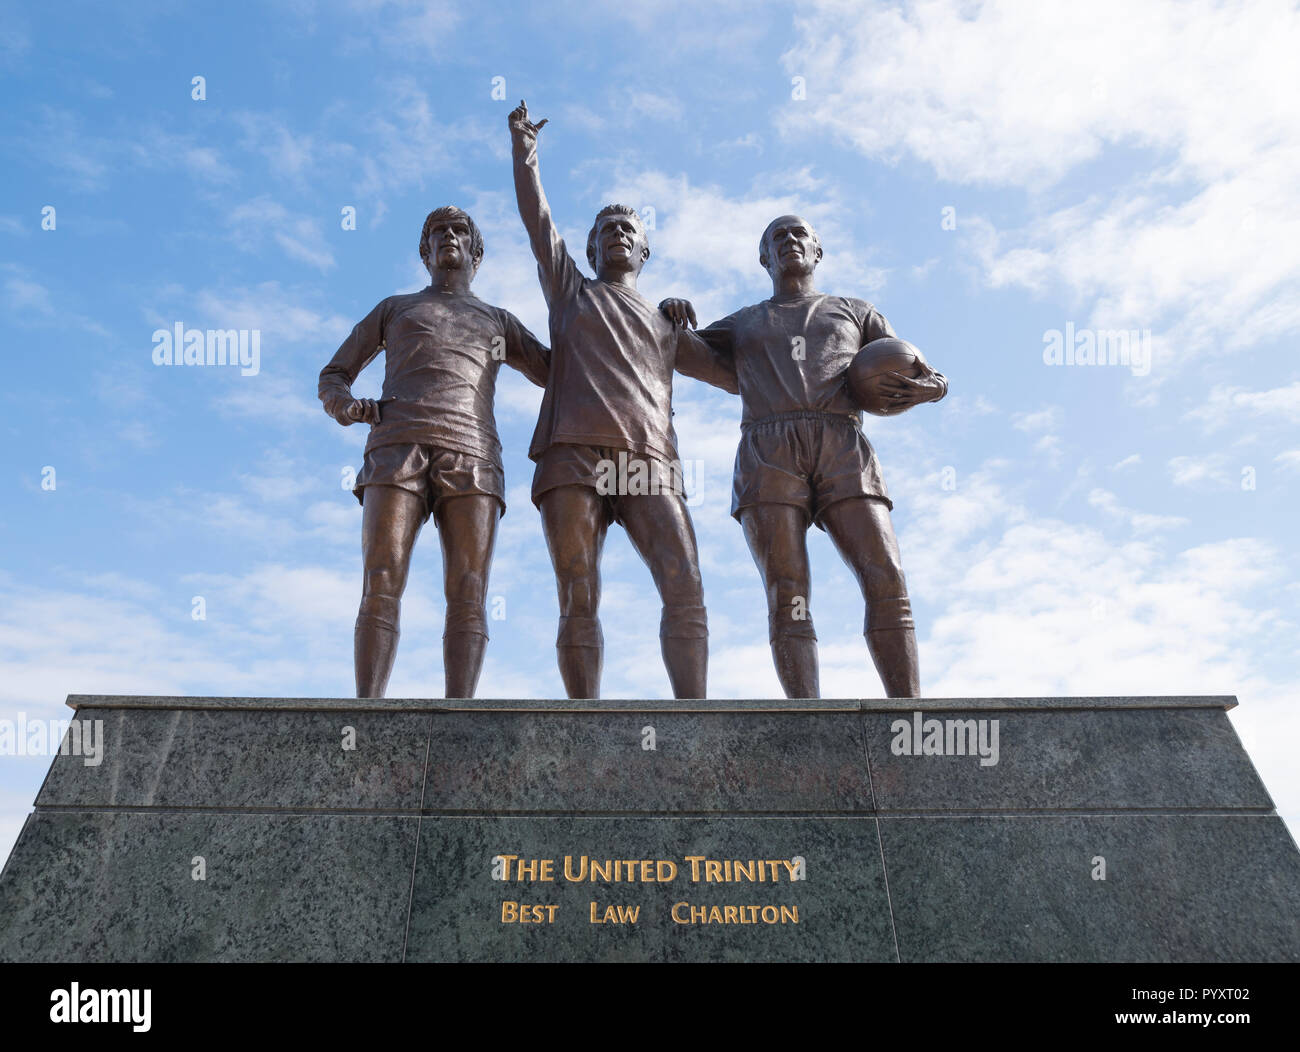 Statue für den besten Spieler, Recht, und Charlton im Old Trafford, Manchester United Fußball Stadion. Manchester, England. Stockfoto